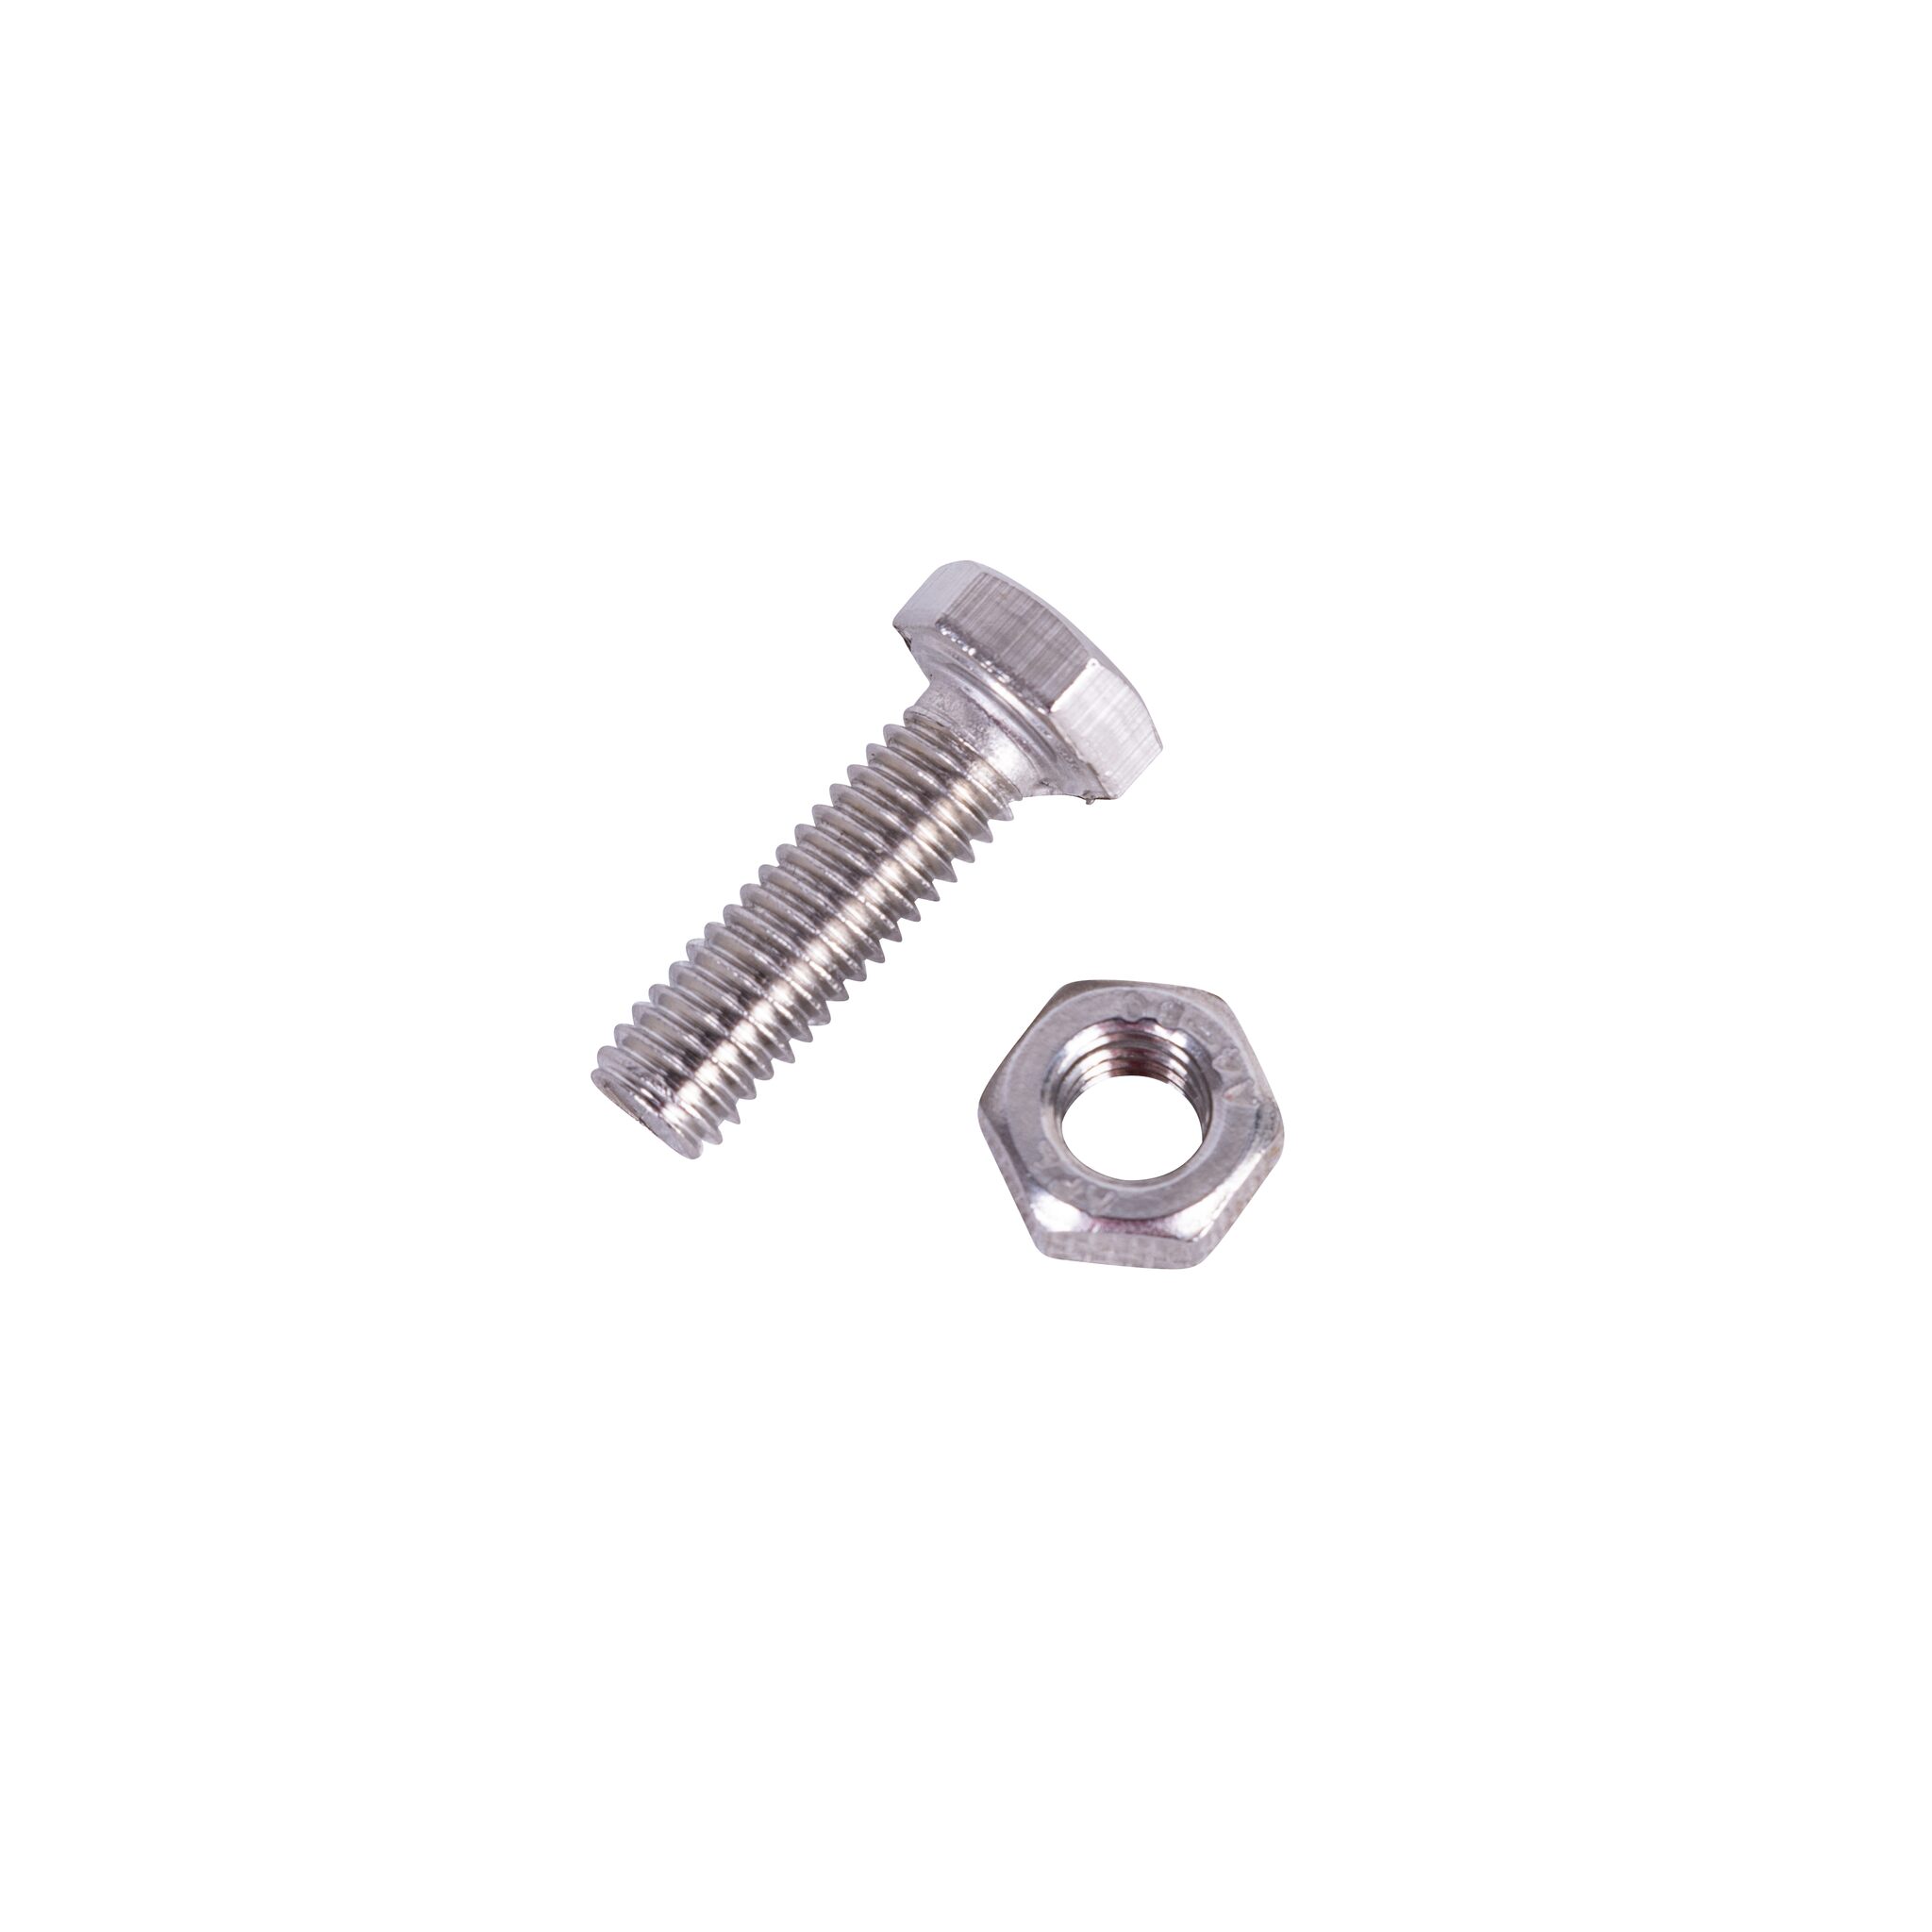 Hexagon bolt with nut (DIN 933/934-A4)